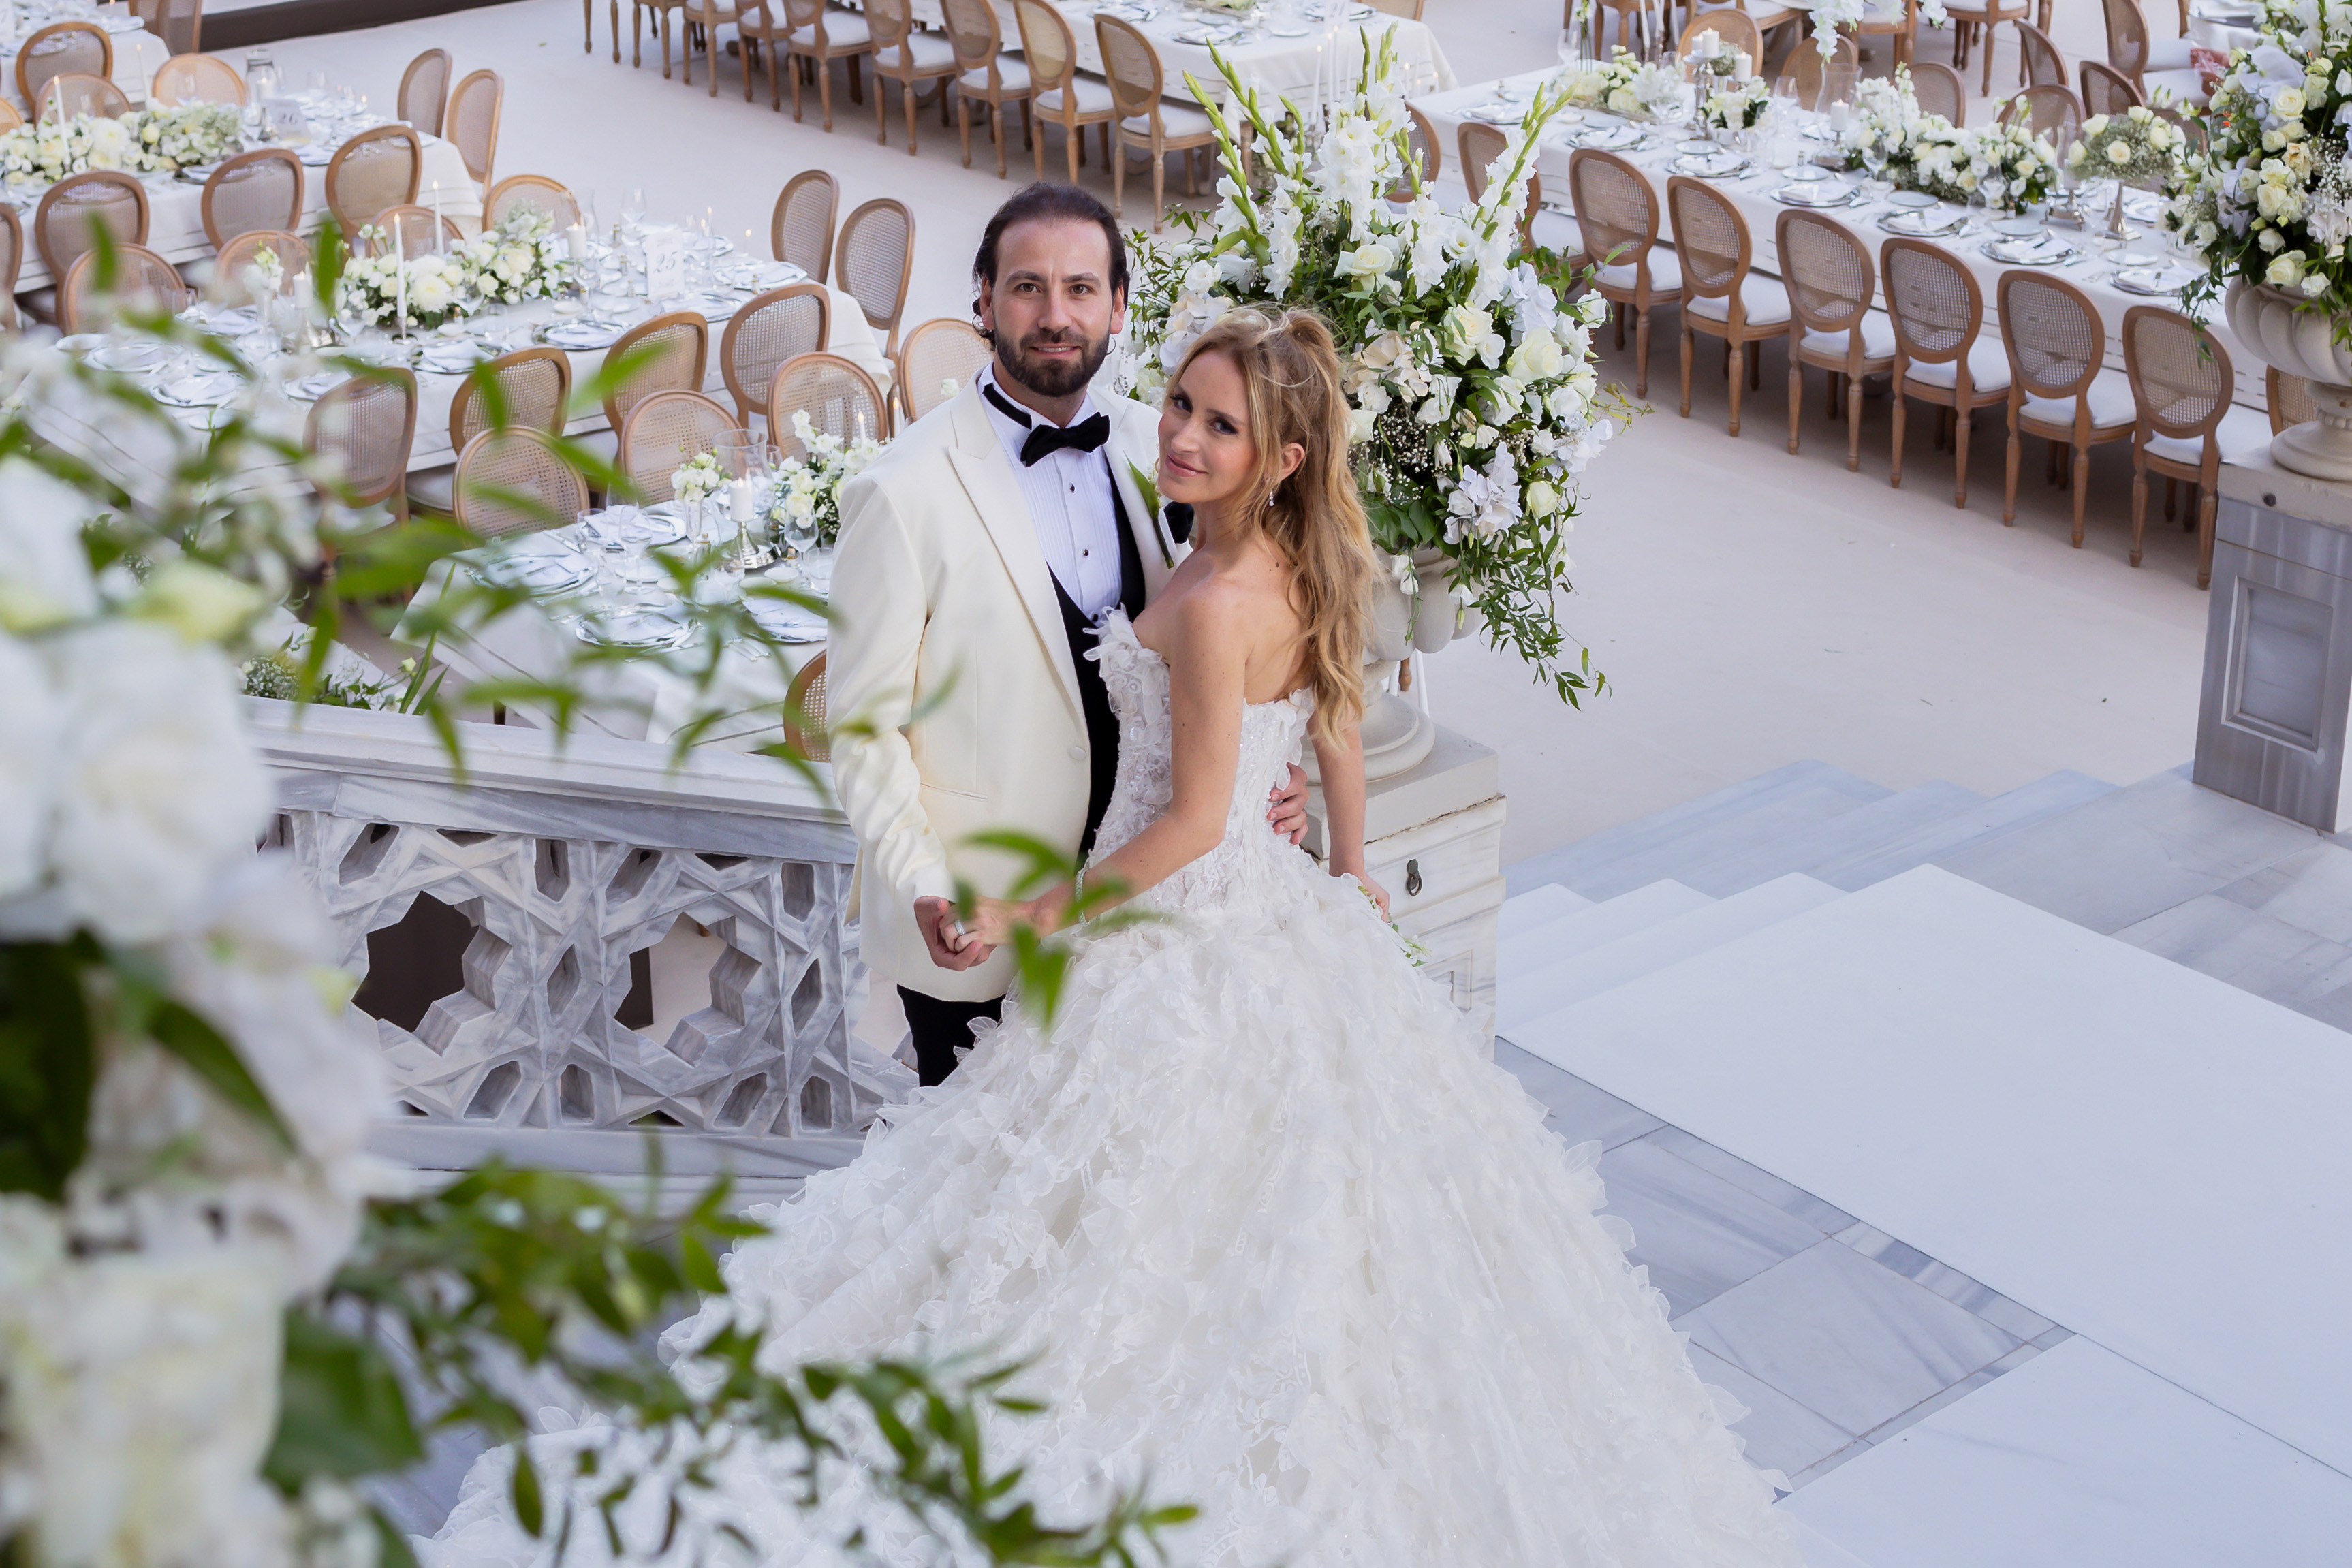  Yasemin Taciroğlu ve Ahmet Uras,  Çırağan Sarayı’nın Tarihi Dokusunda Unutulmaz Bir Düğün ile Evlendiler